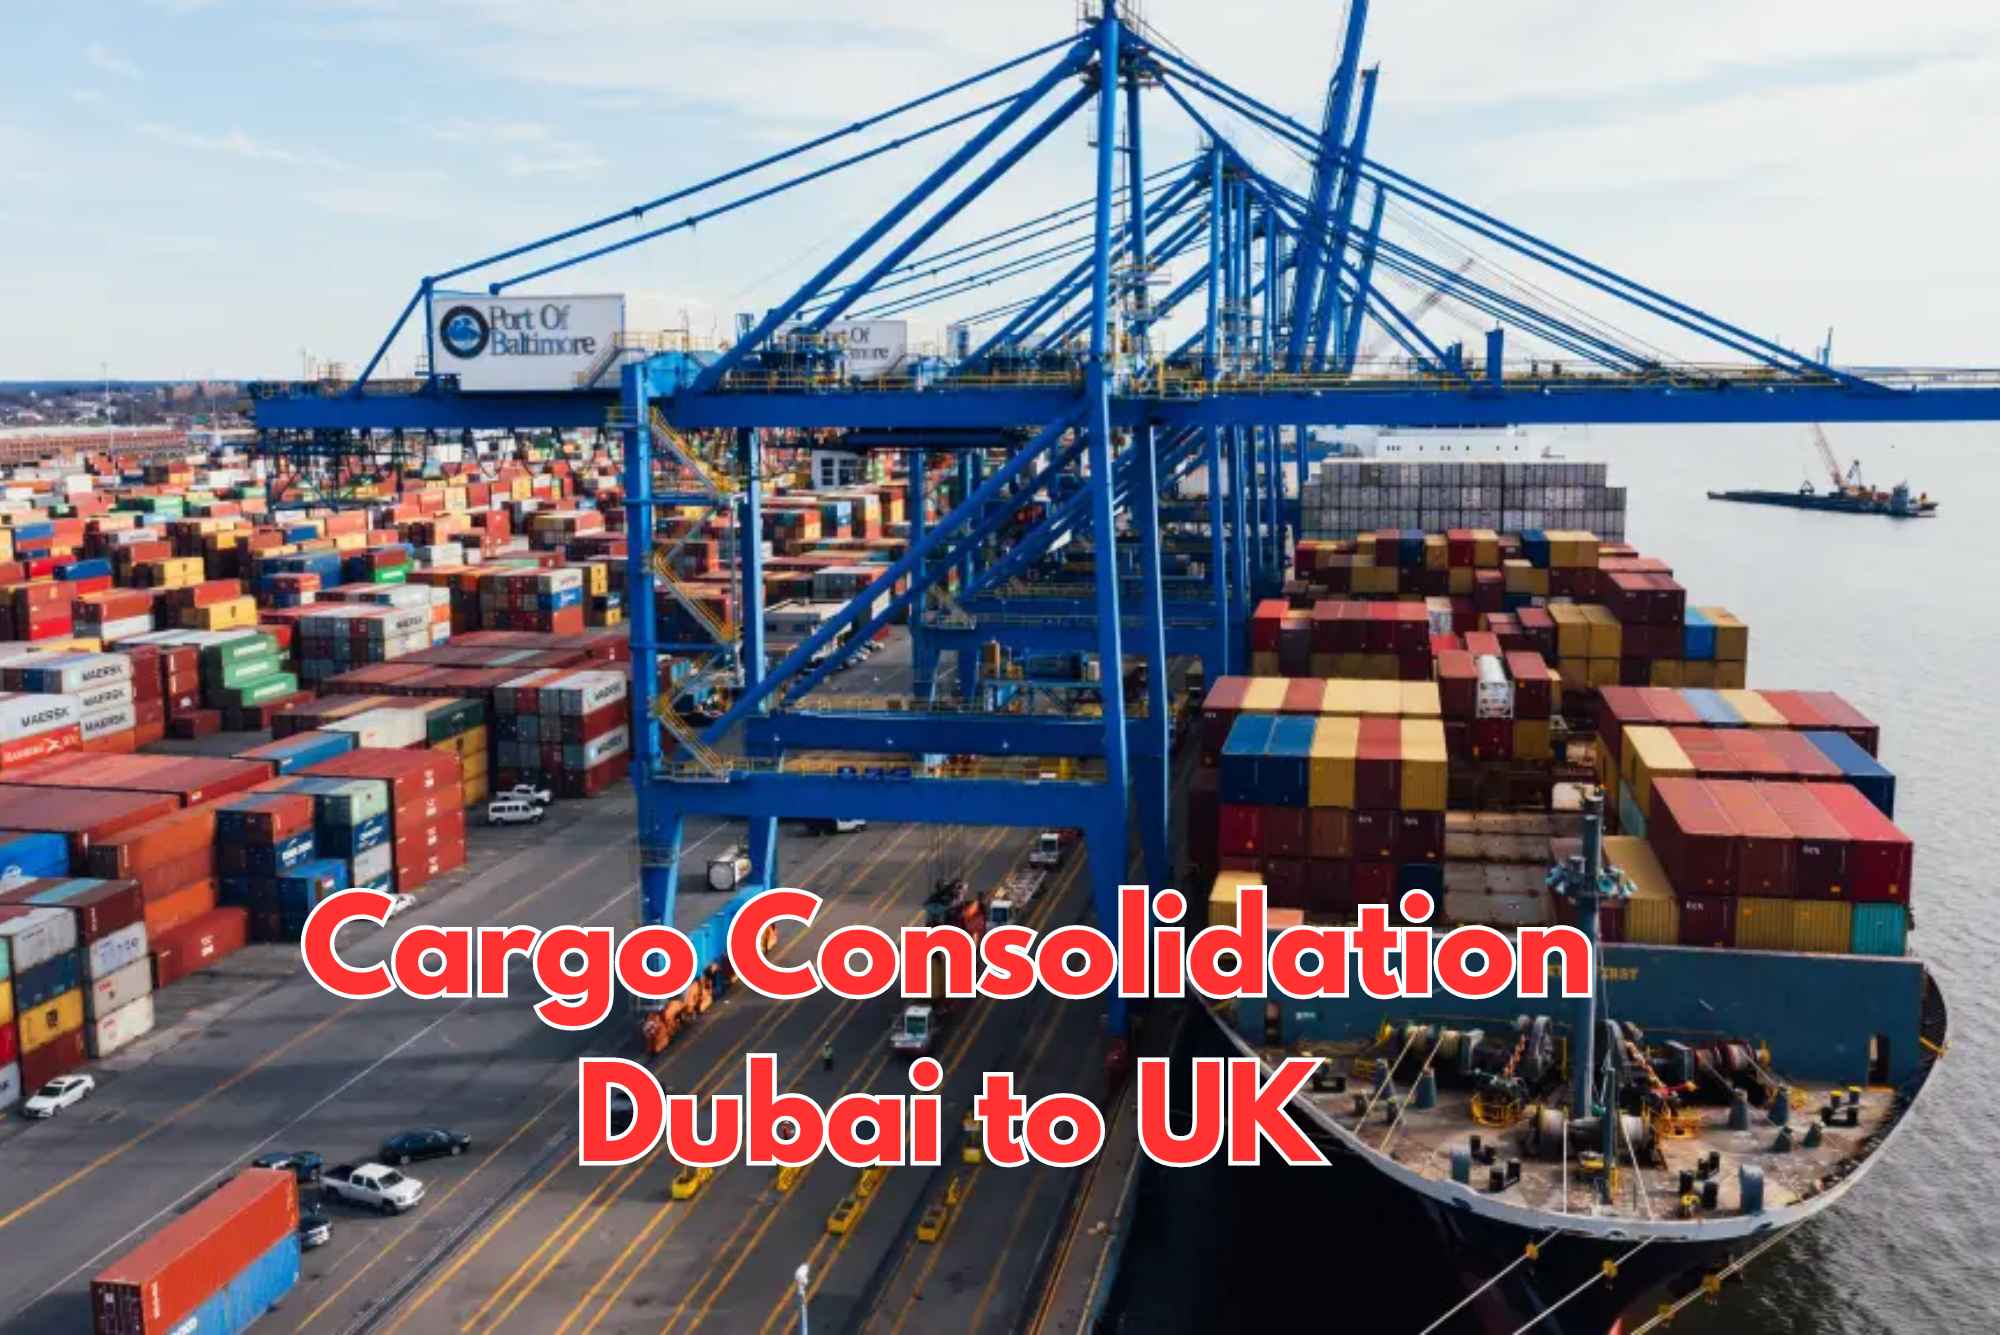 Cargo consolidation Dubai to UK